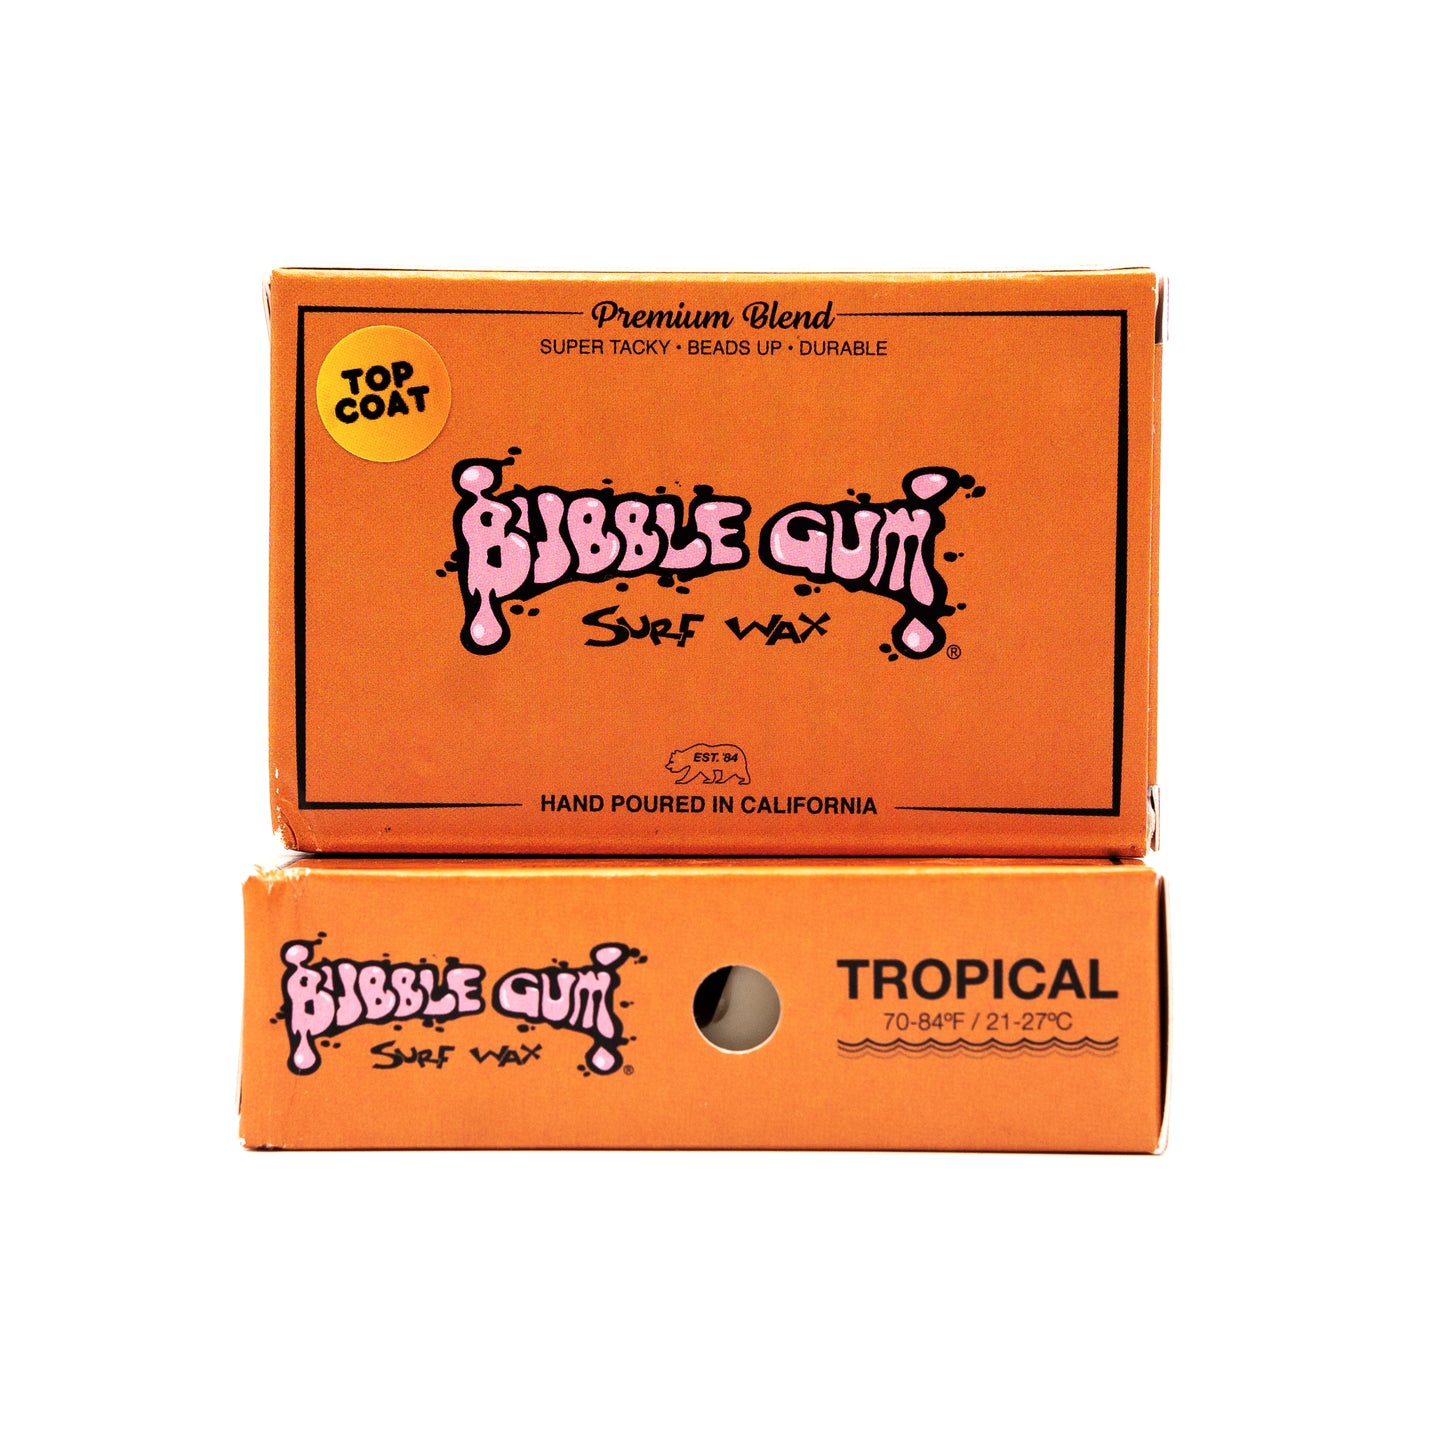 Bubble Gum Surf Wax Premium Blend - Tropical 70° & Up